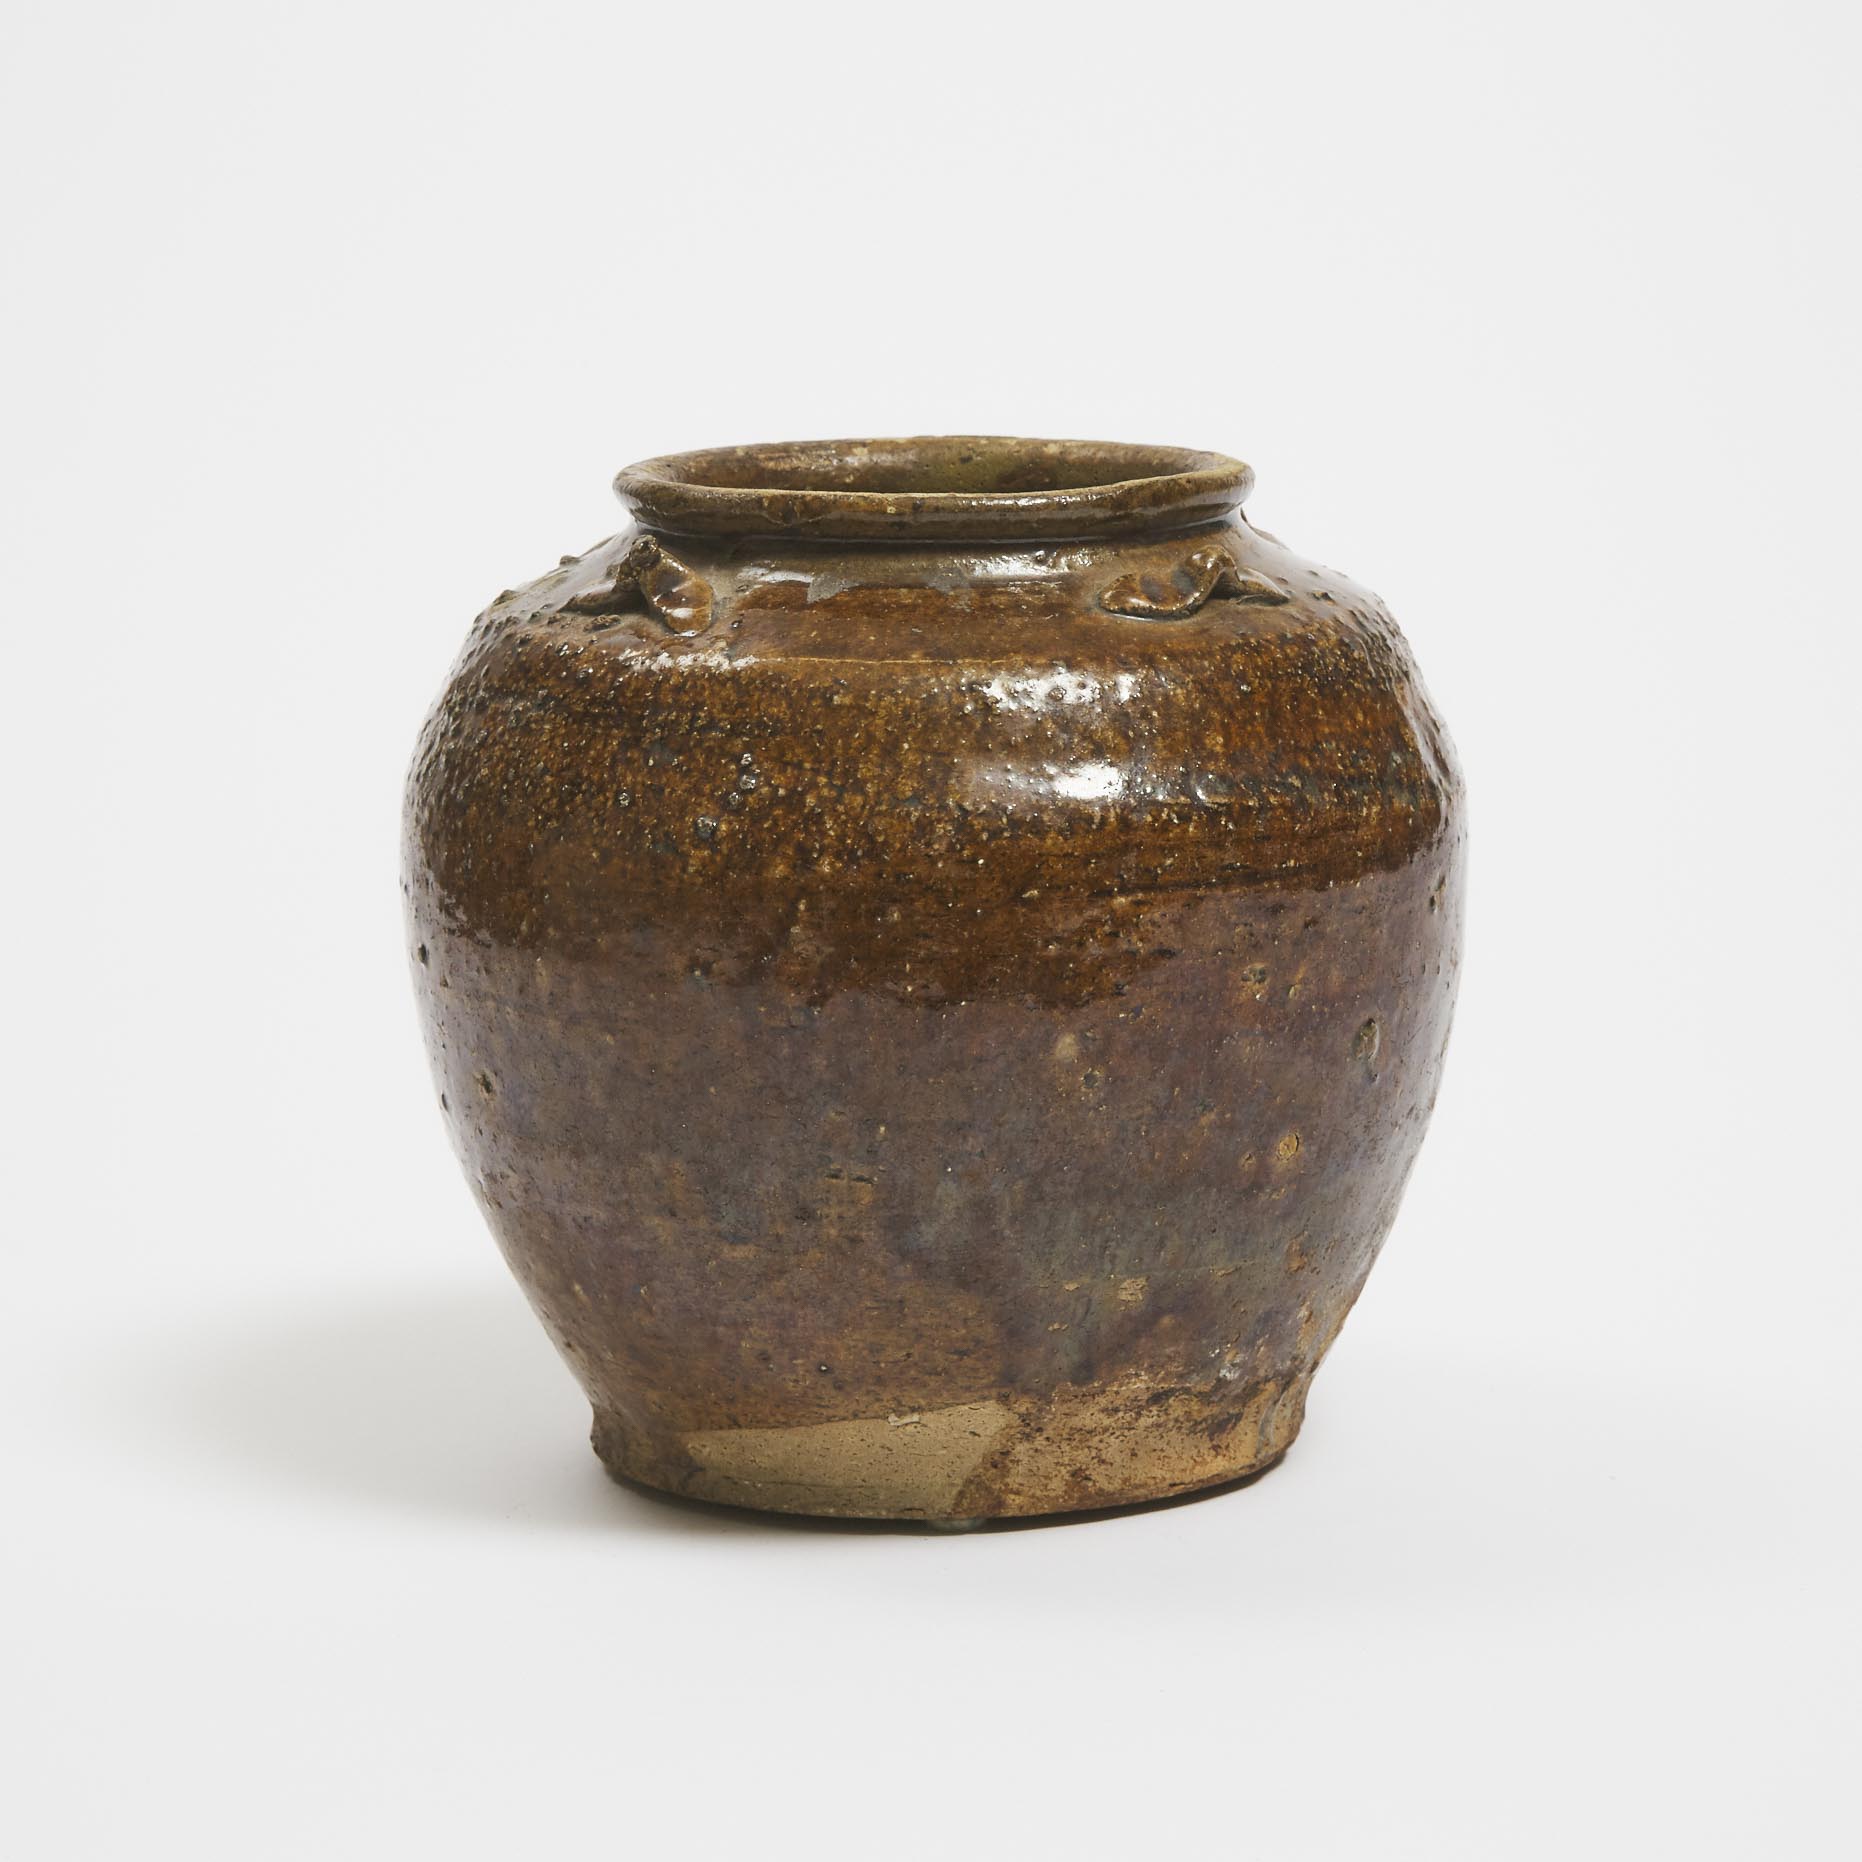 A Martaban Stoneware Storage Jar, China/Southeast Asia